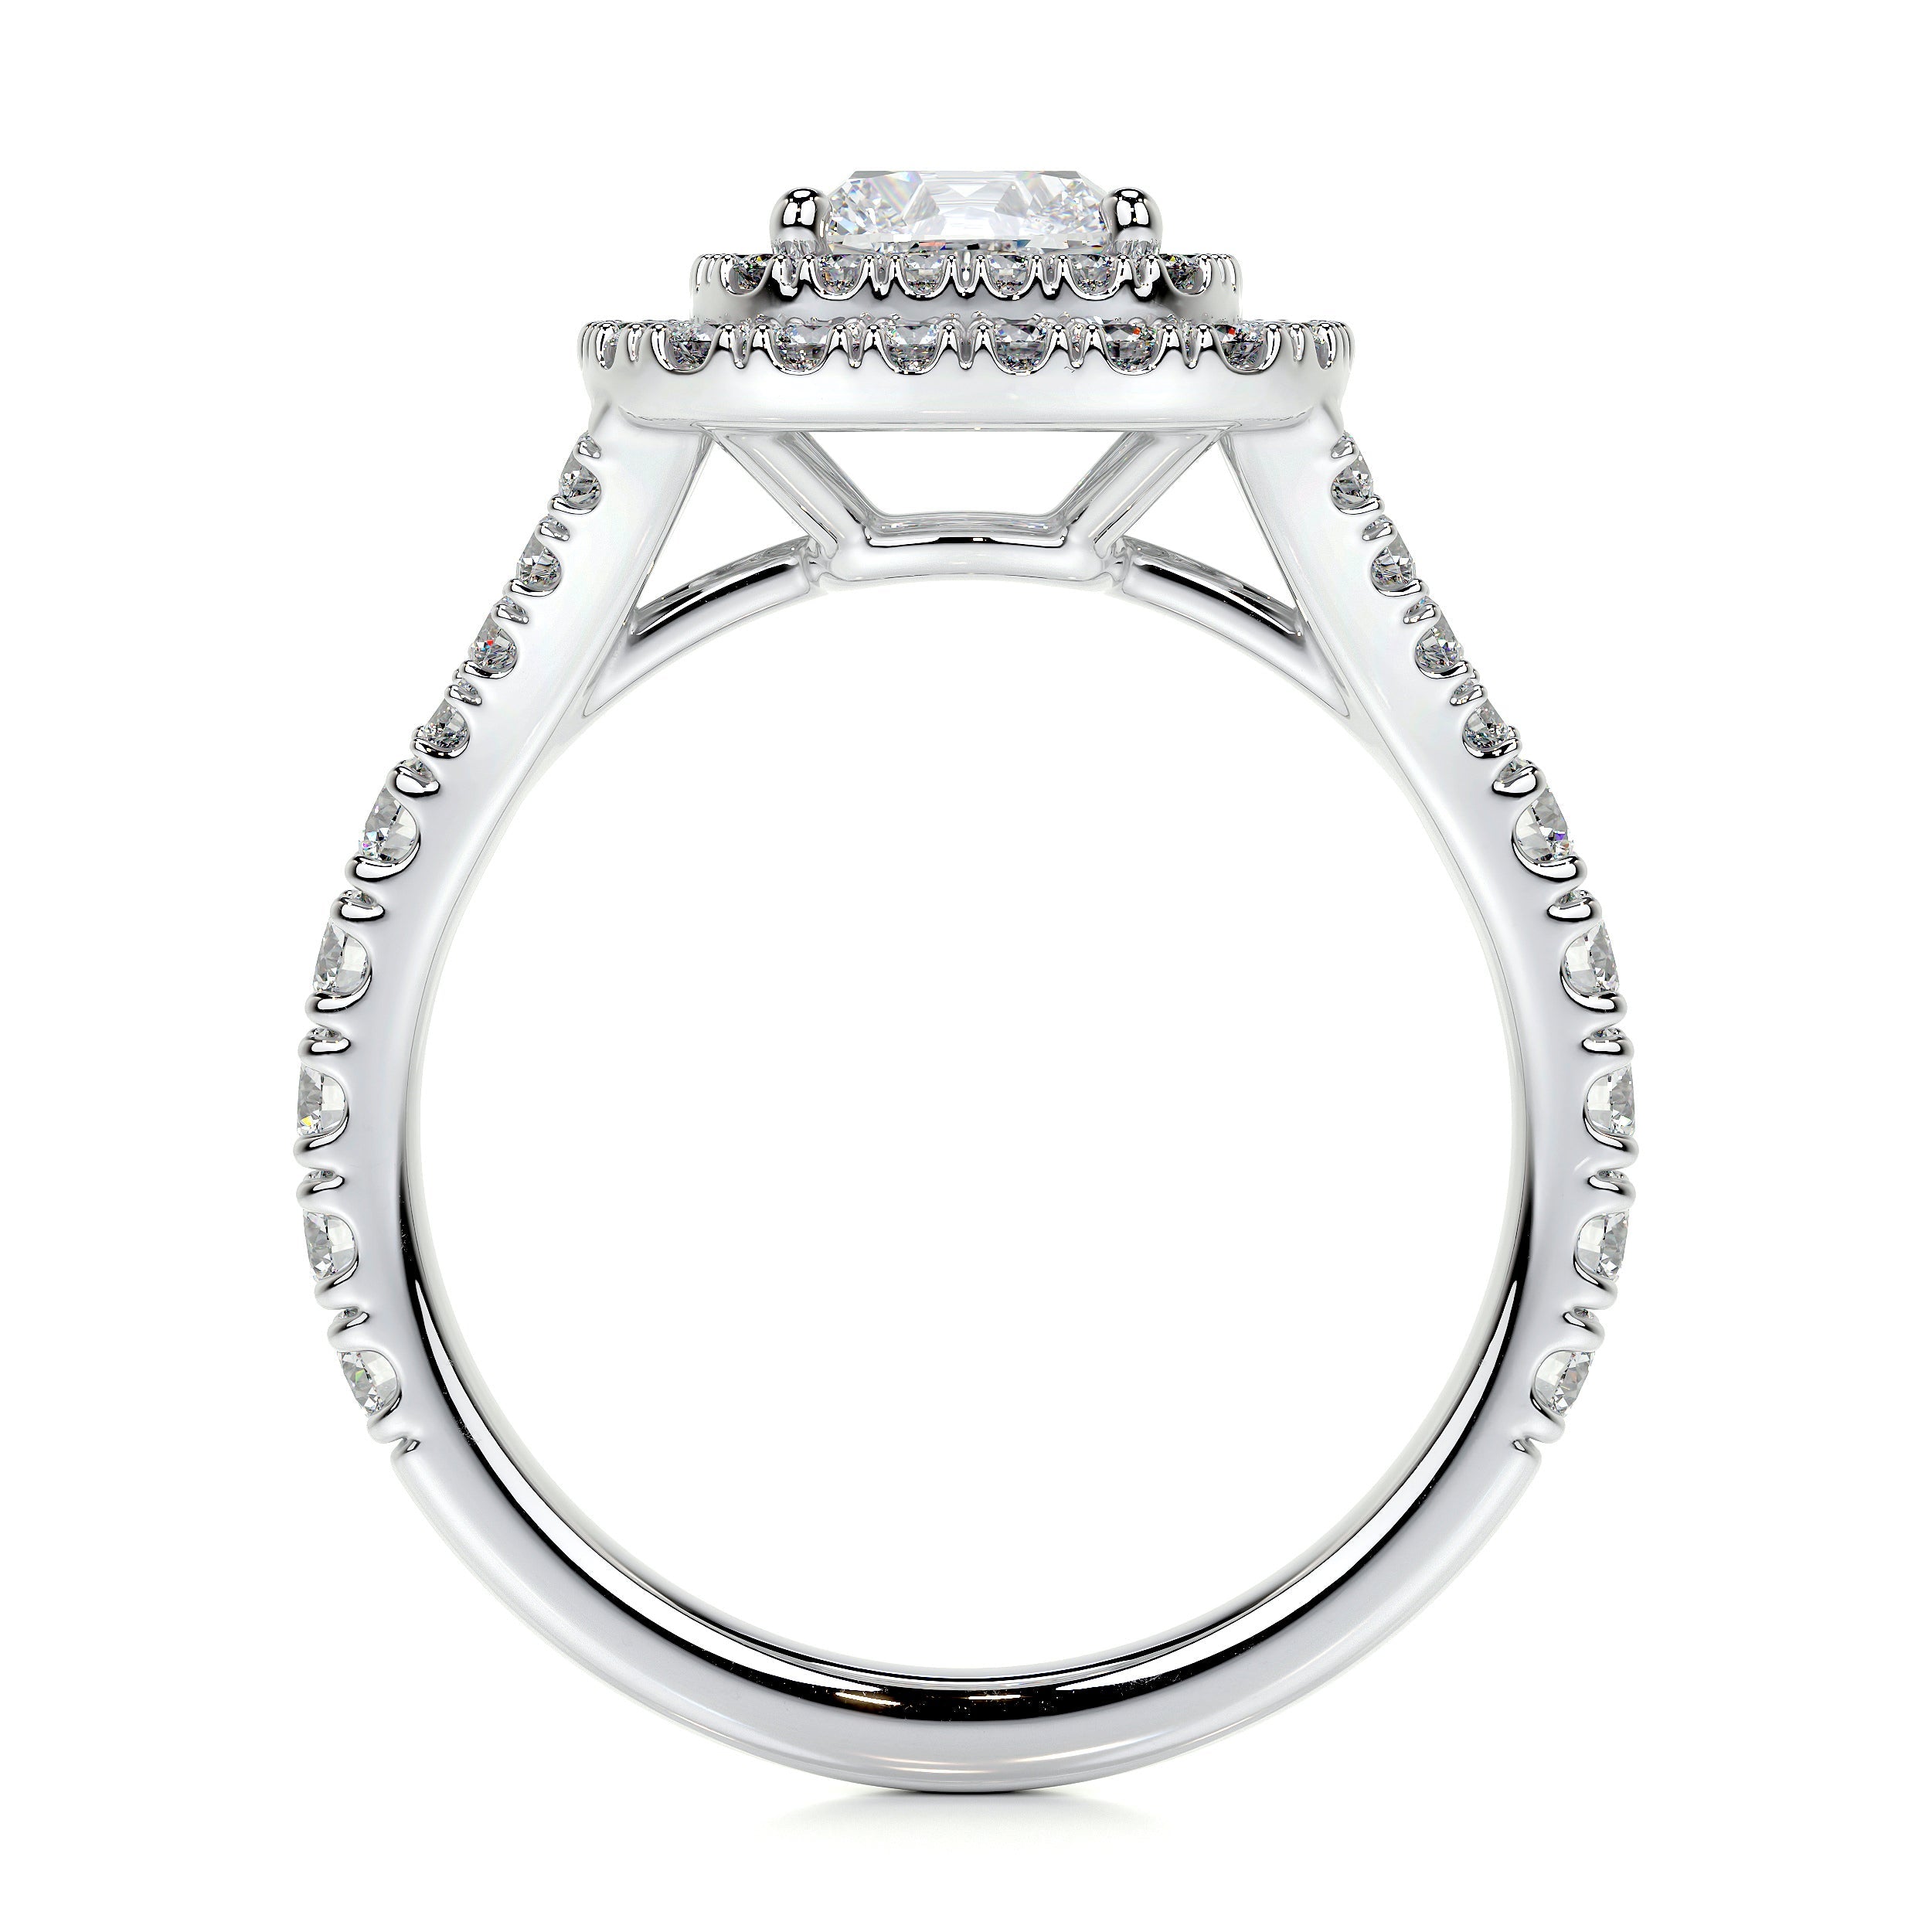 Tina Lab Grown Diamond Ring   (1.90 Carat) -18K White Gold